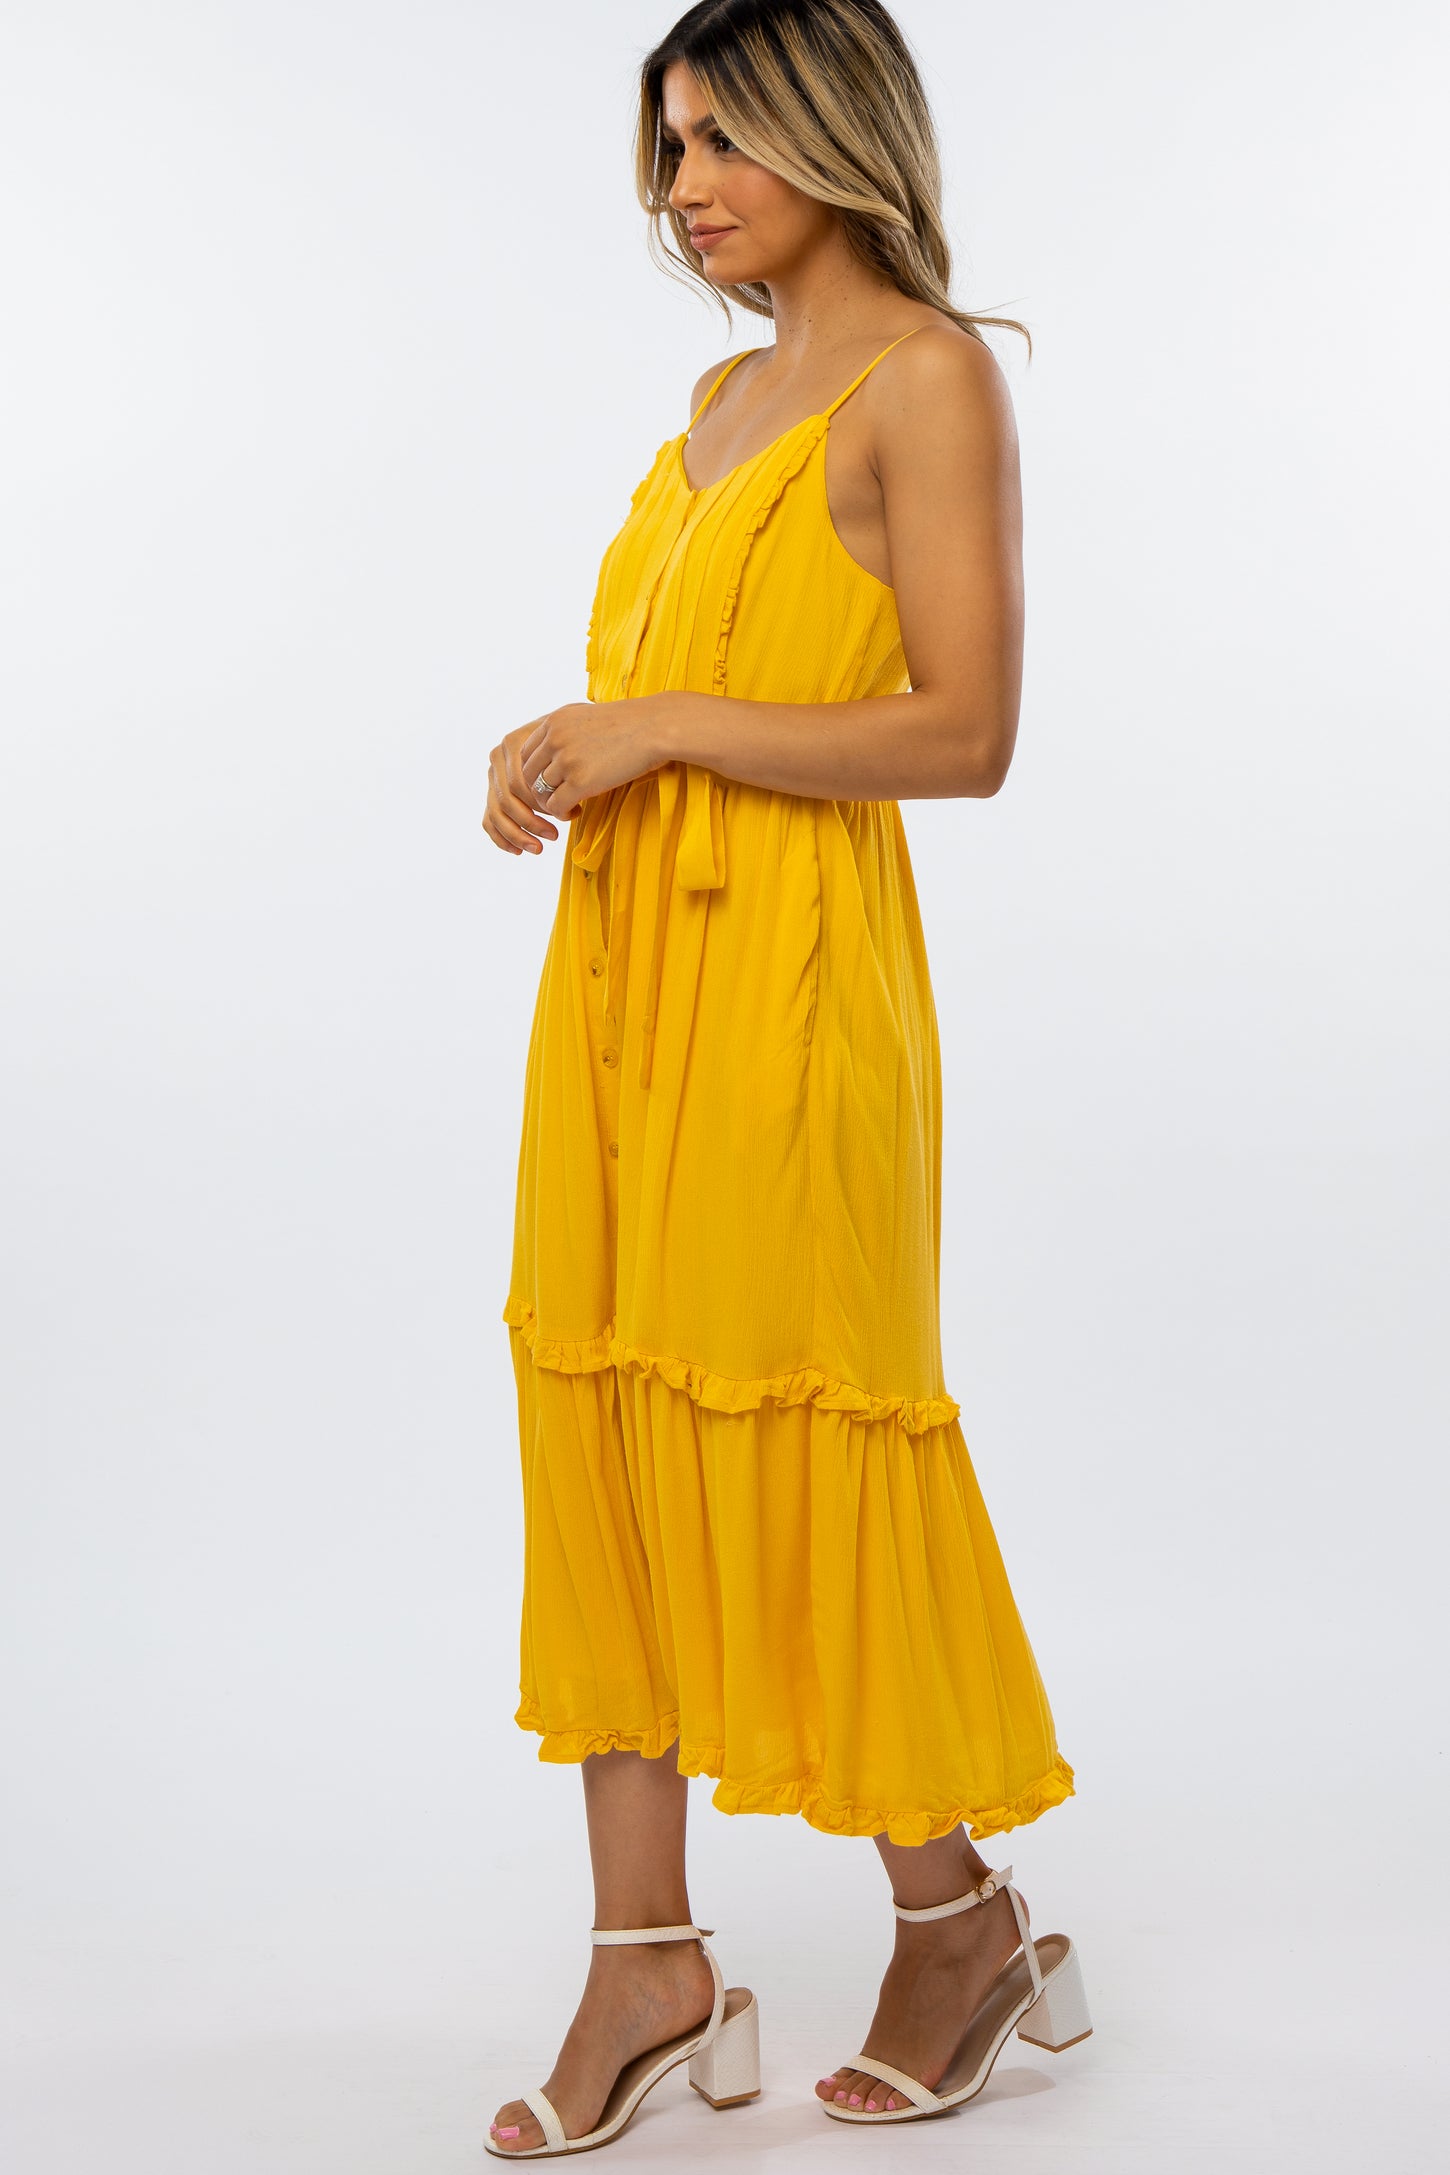 Yellow Front Button Ruffle Tiered Hem Midi Dress